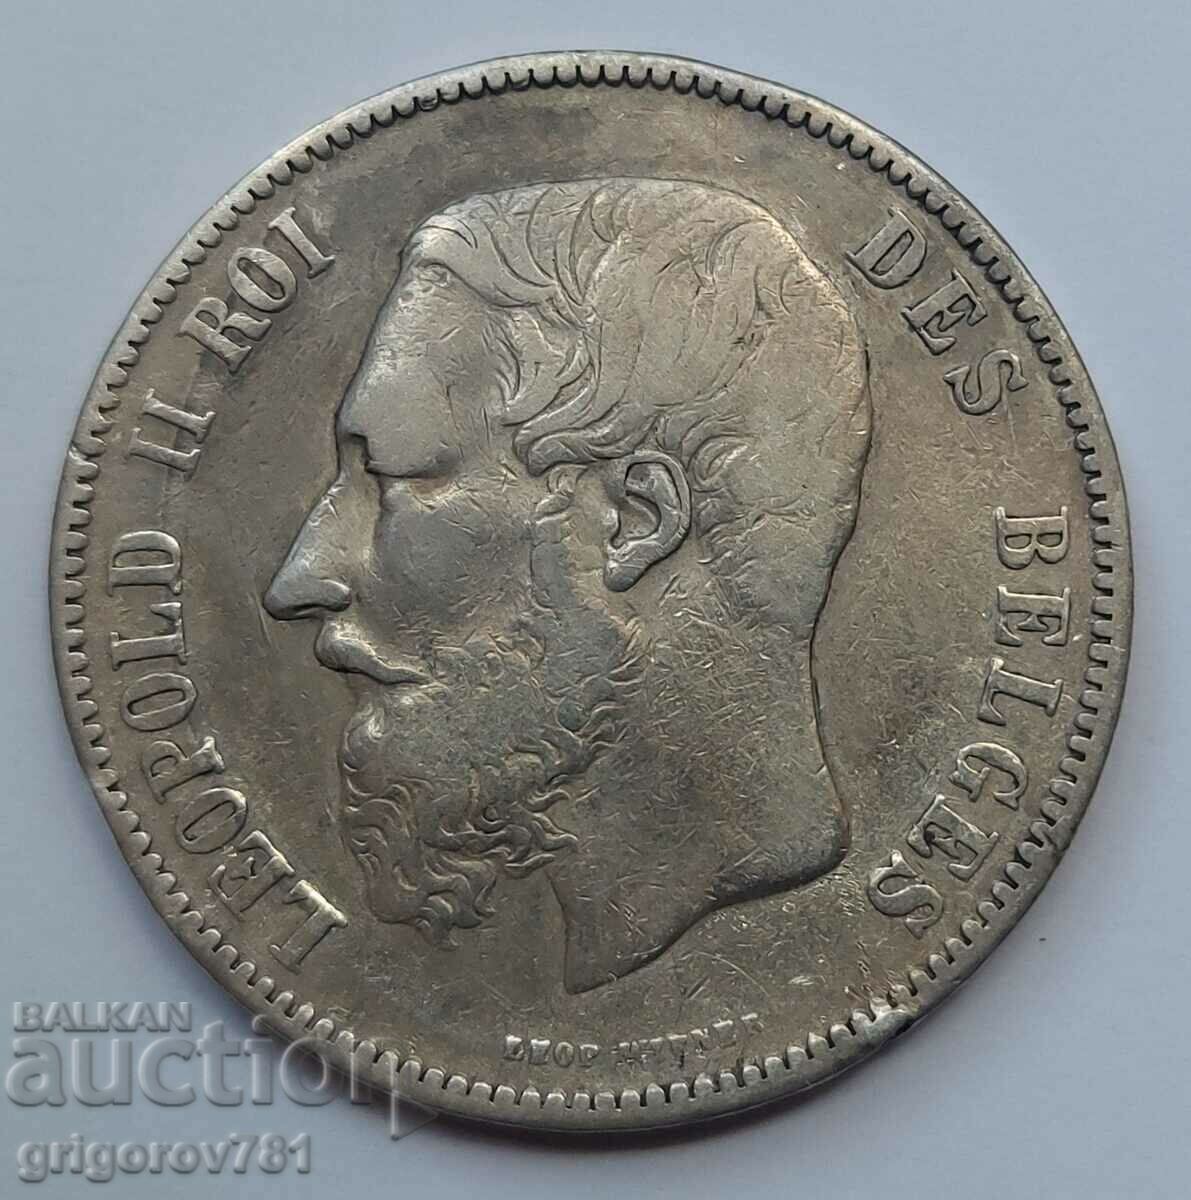 Ασημένιο 5 Φράγκα Βέλγιο 1873 - Ασημένιο νόμισμα #235